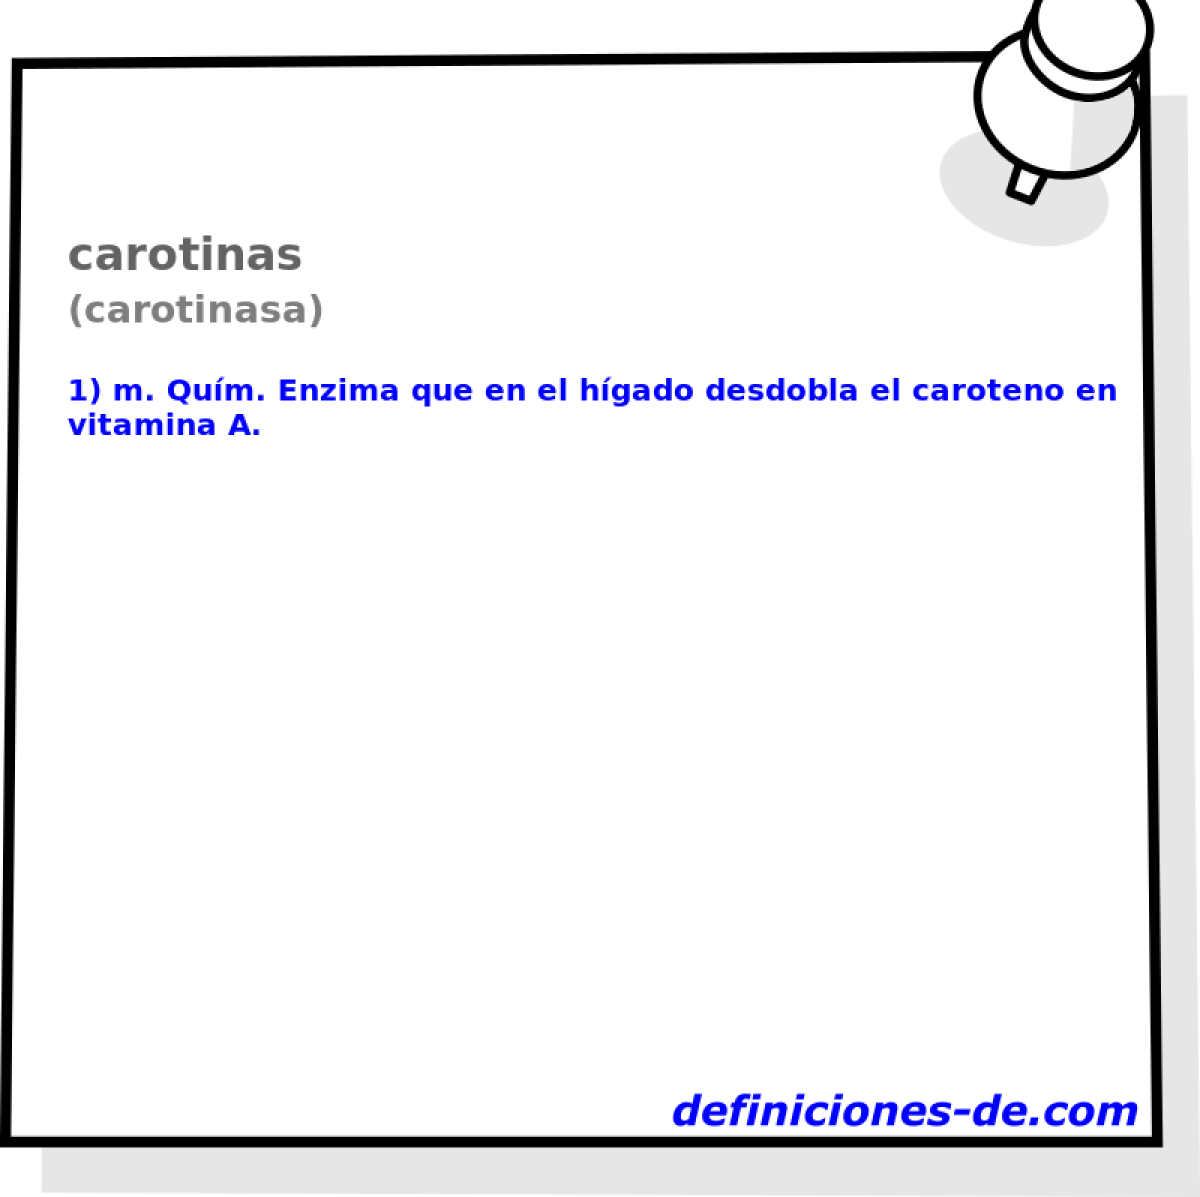 carotinas (carotinasa)